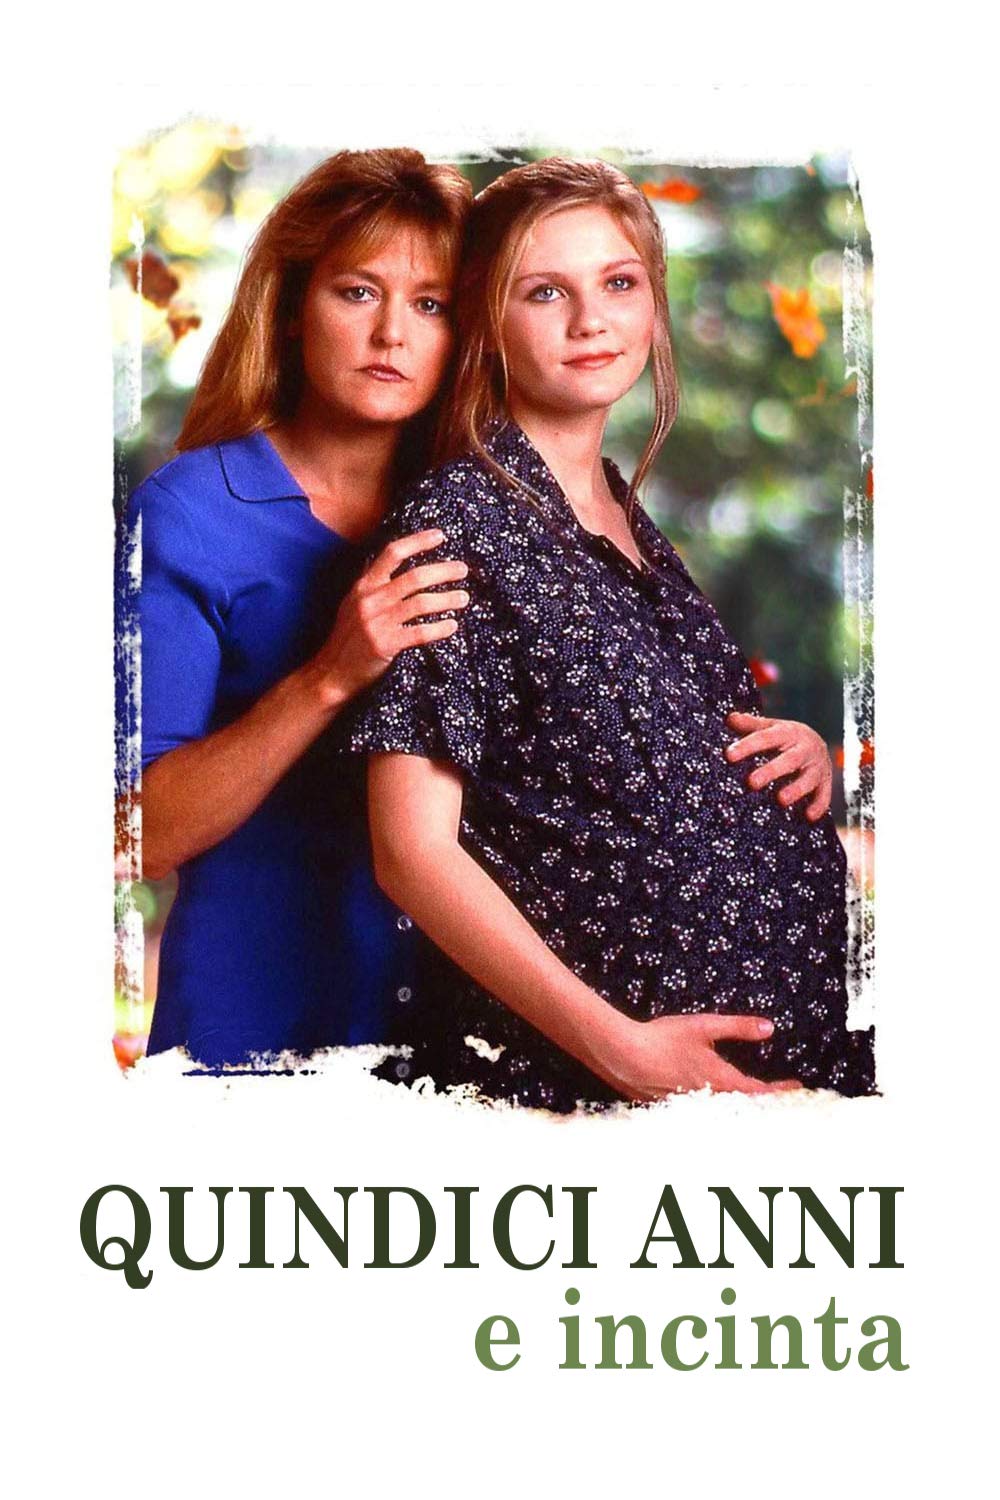 Quindici anni e incinta [HD] (1998)